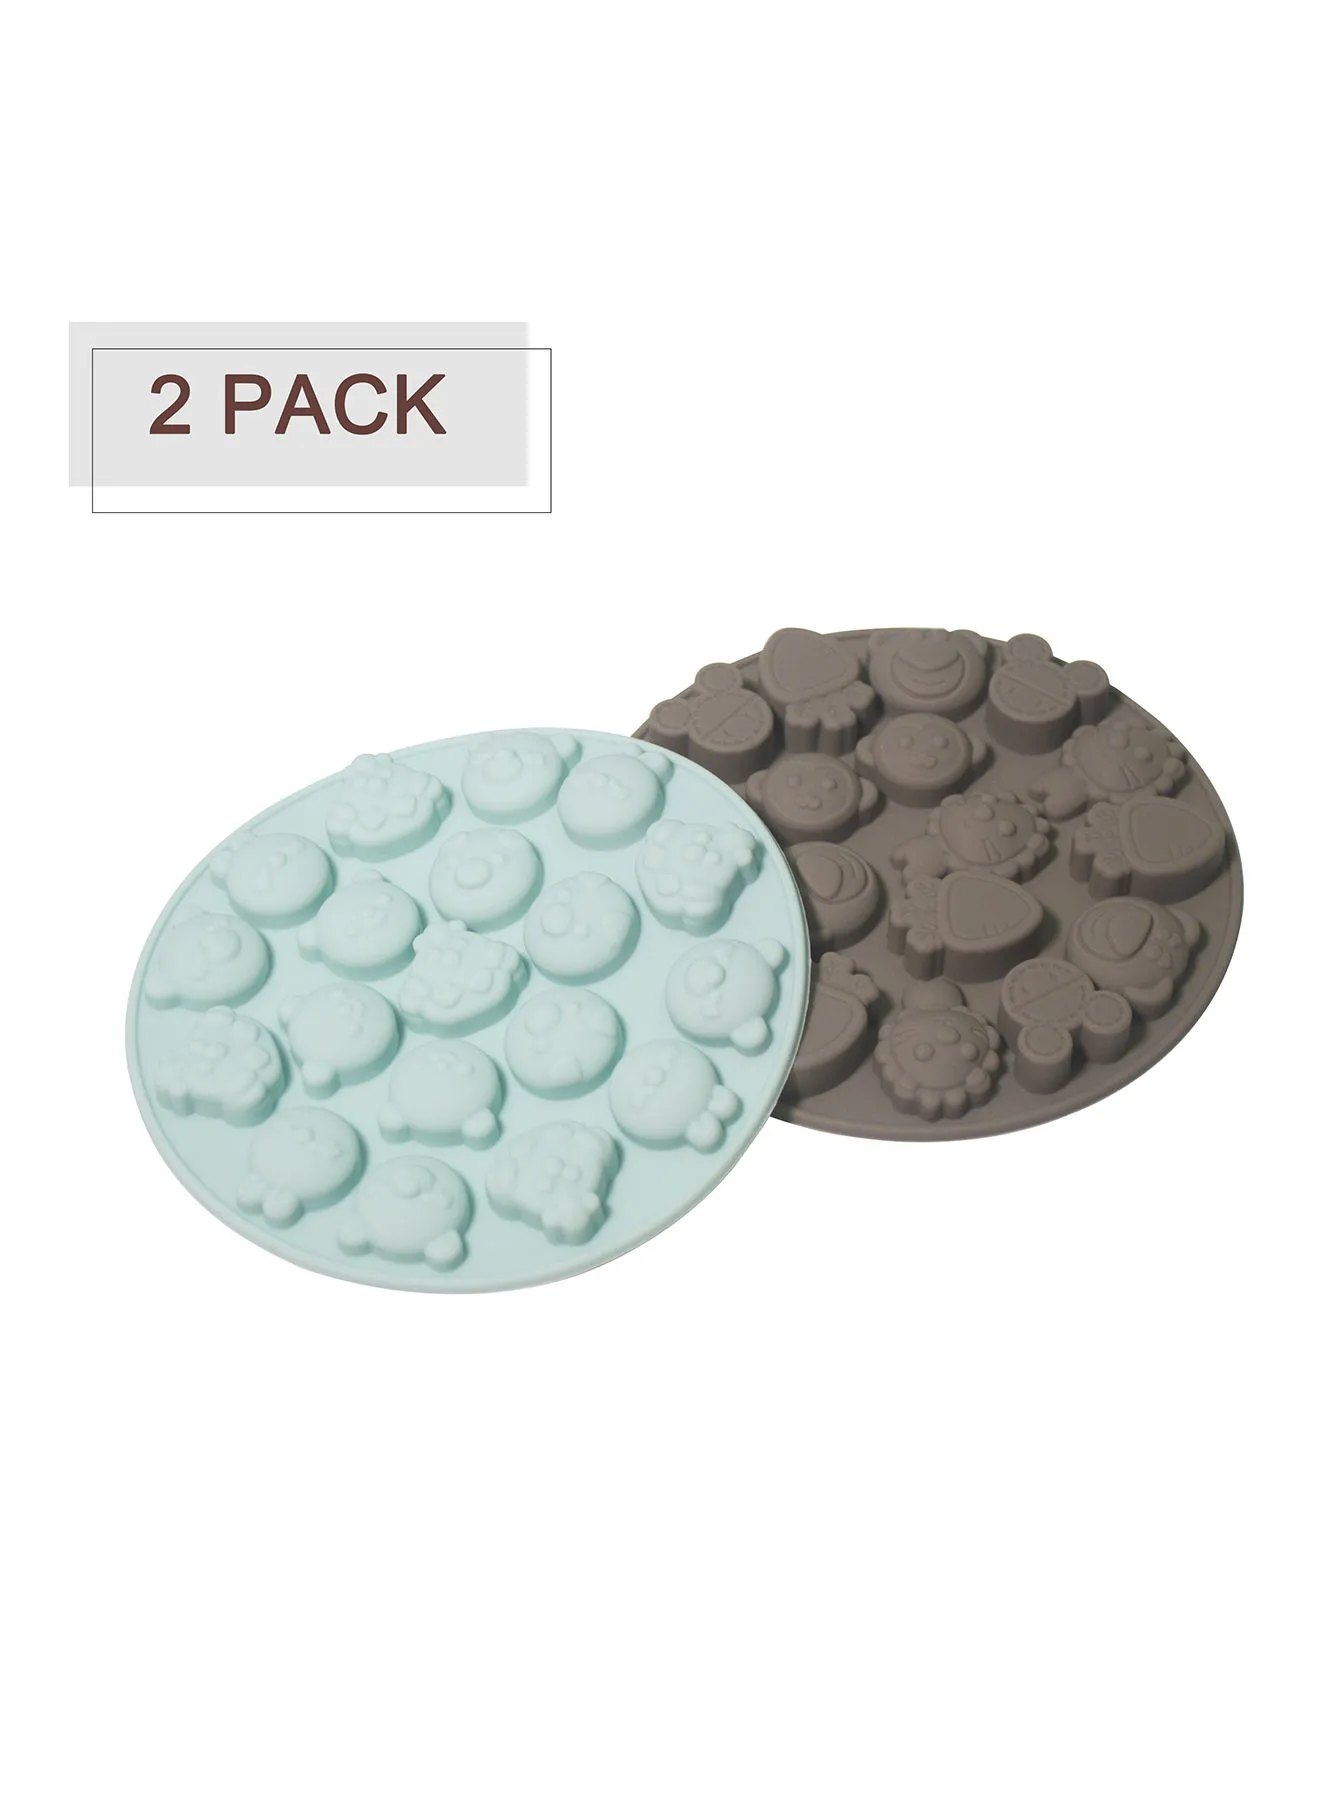 Amal 2 Trays Chocolate Molds - Animal Faces Shape - Silicone Molds - Cake Mold - Silicon Chocolate Molds - Blue/Grey